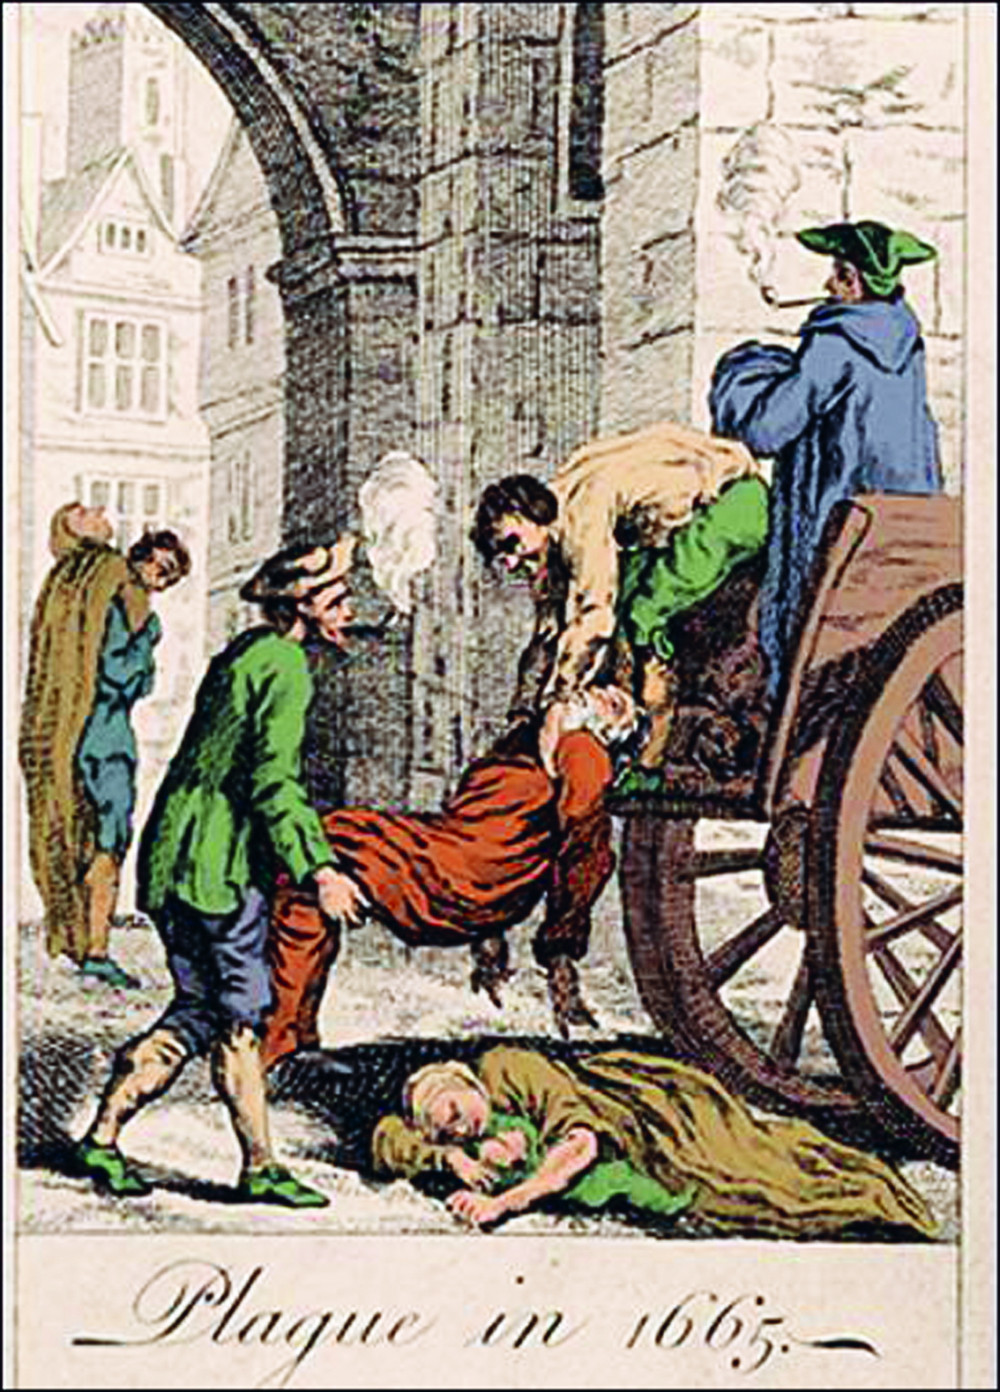 Thu gom xác người chết trong trận dịch hạch ở London, năm 1665